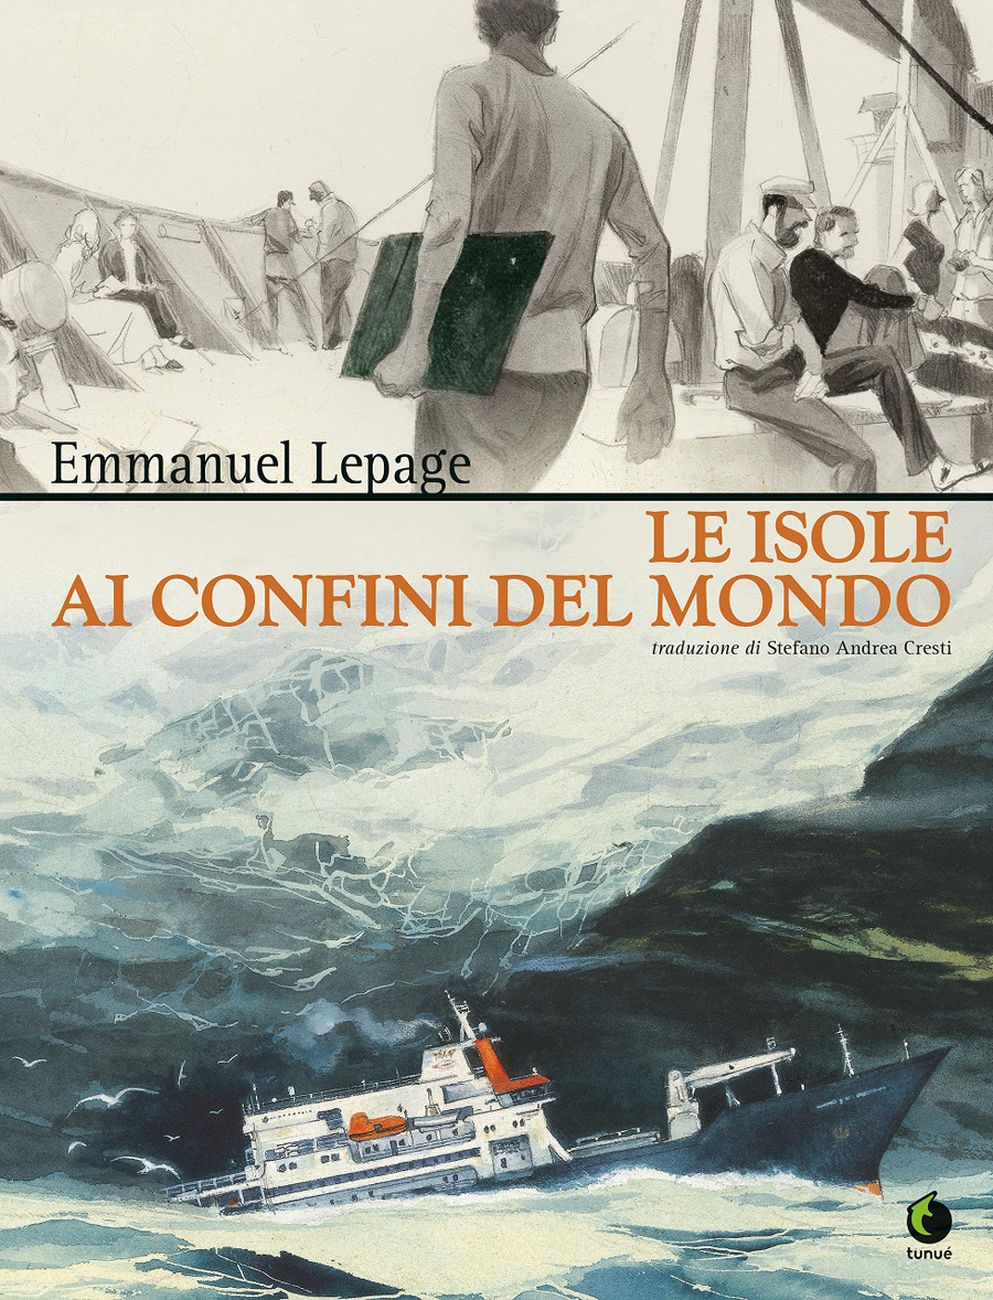 Emmanuel Lepage – Le isole ai confini del mondo (Tunué, Latina 2020)